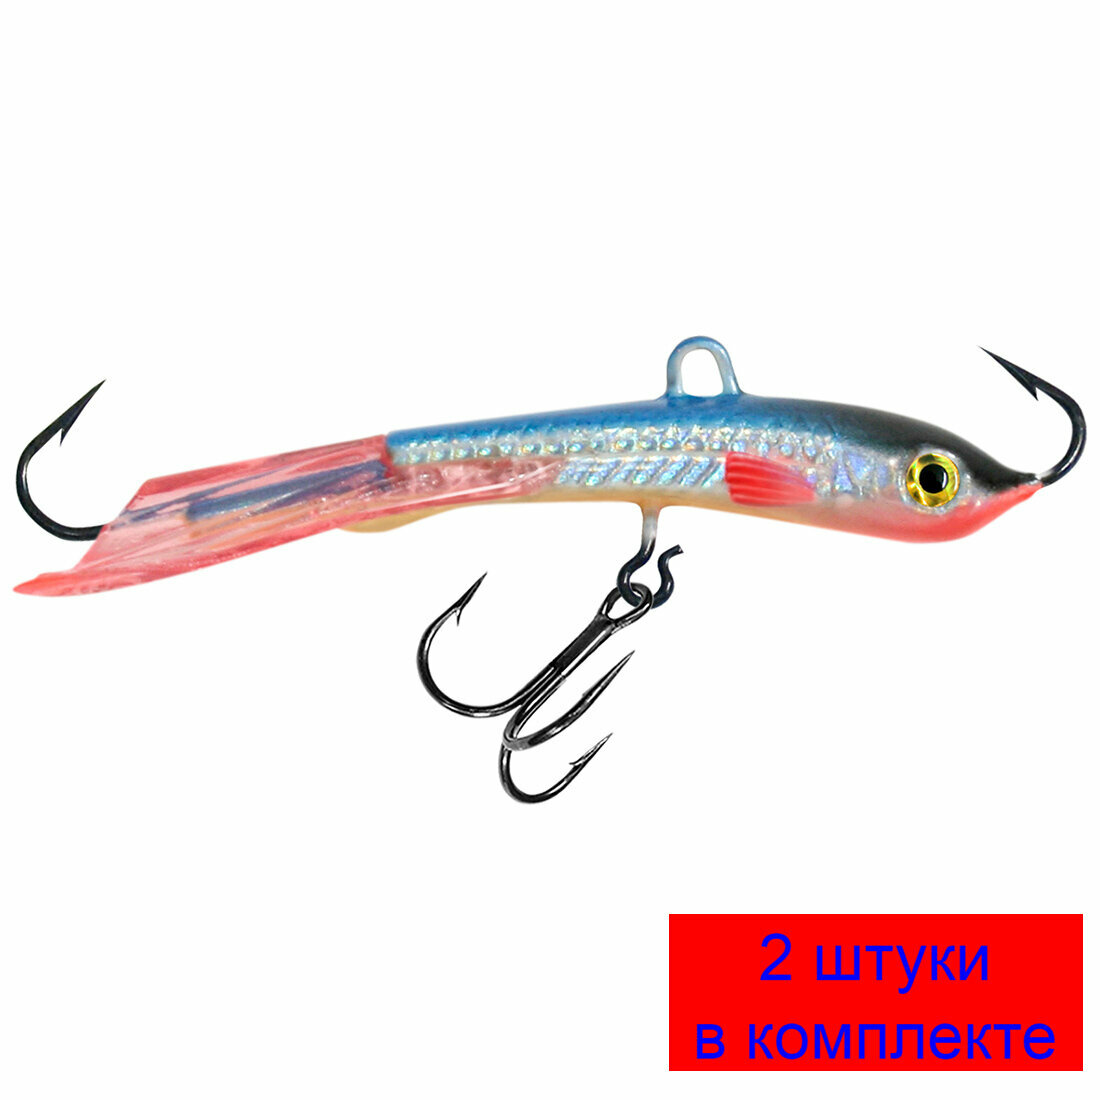 Балансир для рыбалки AQUA TRAPPER (new)-5 56mm цвет 015 (голубая спинка), 2 штуки